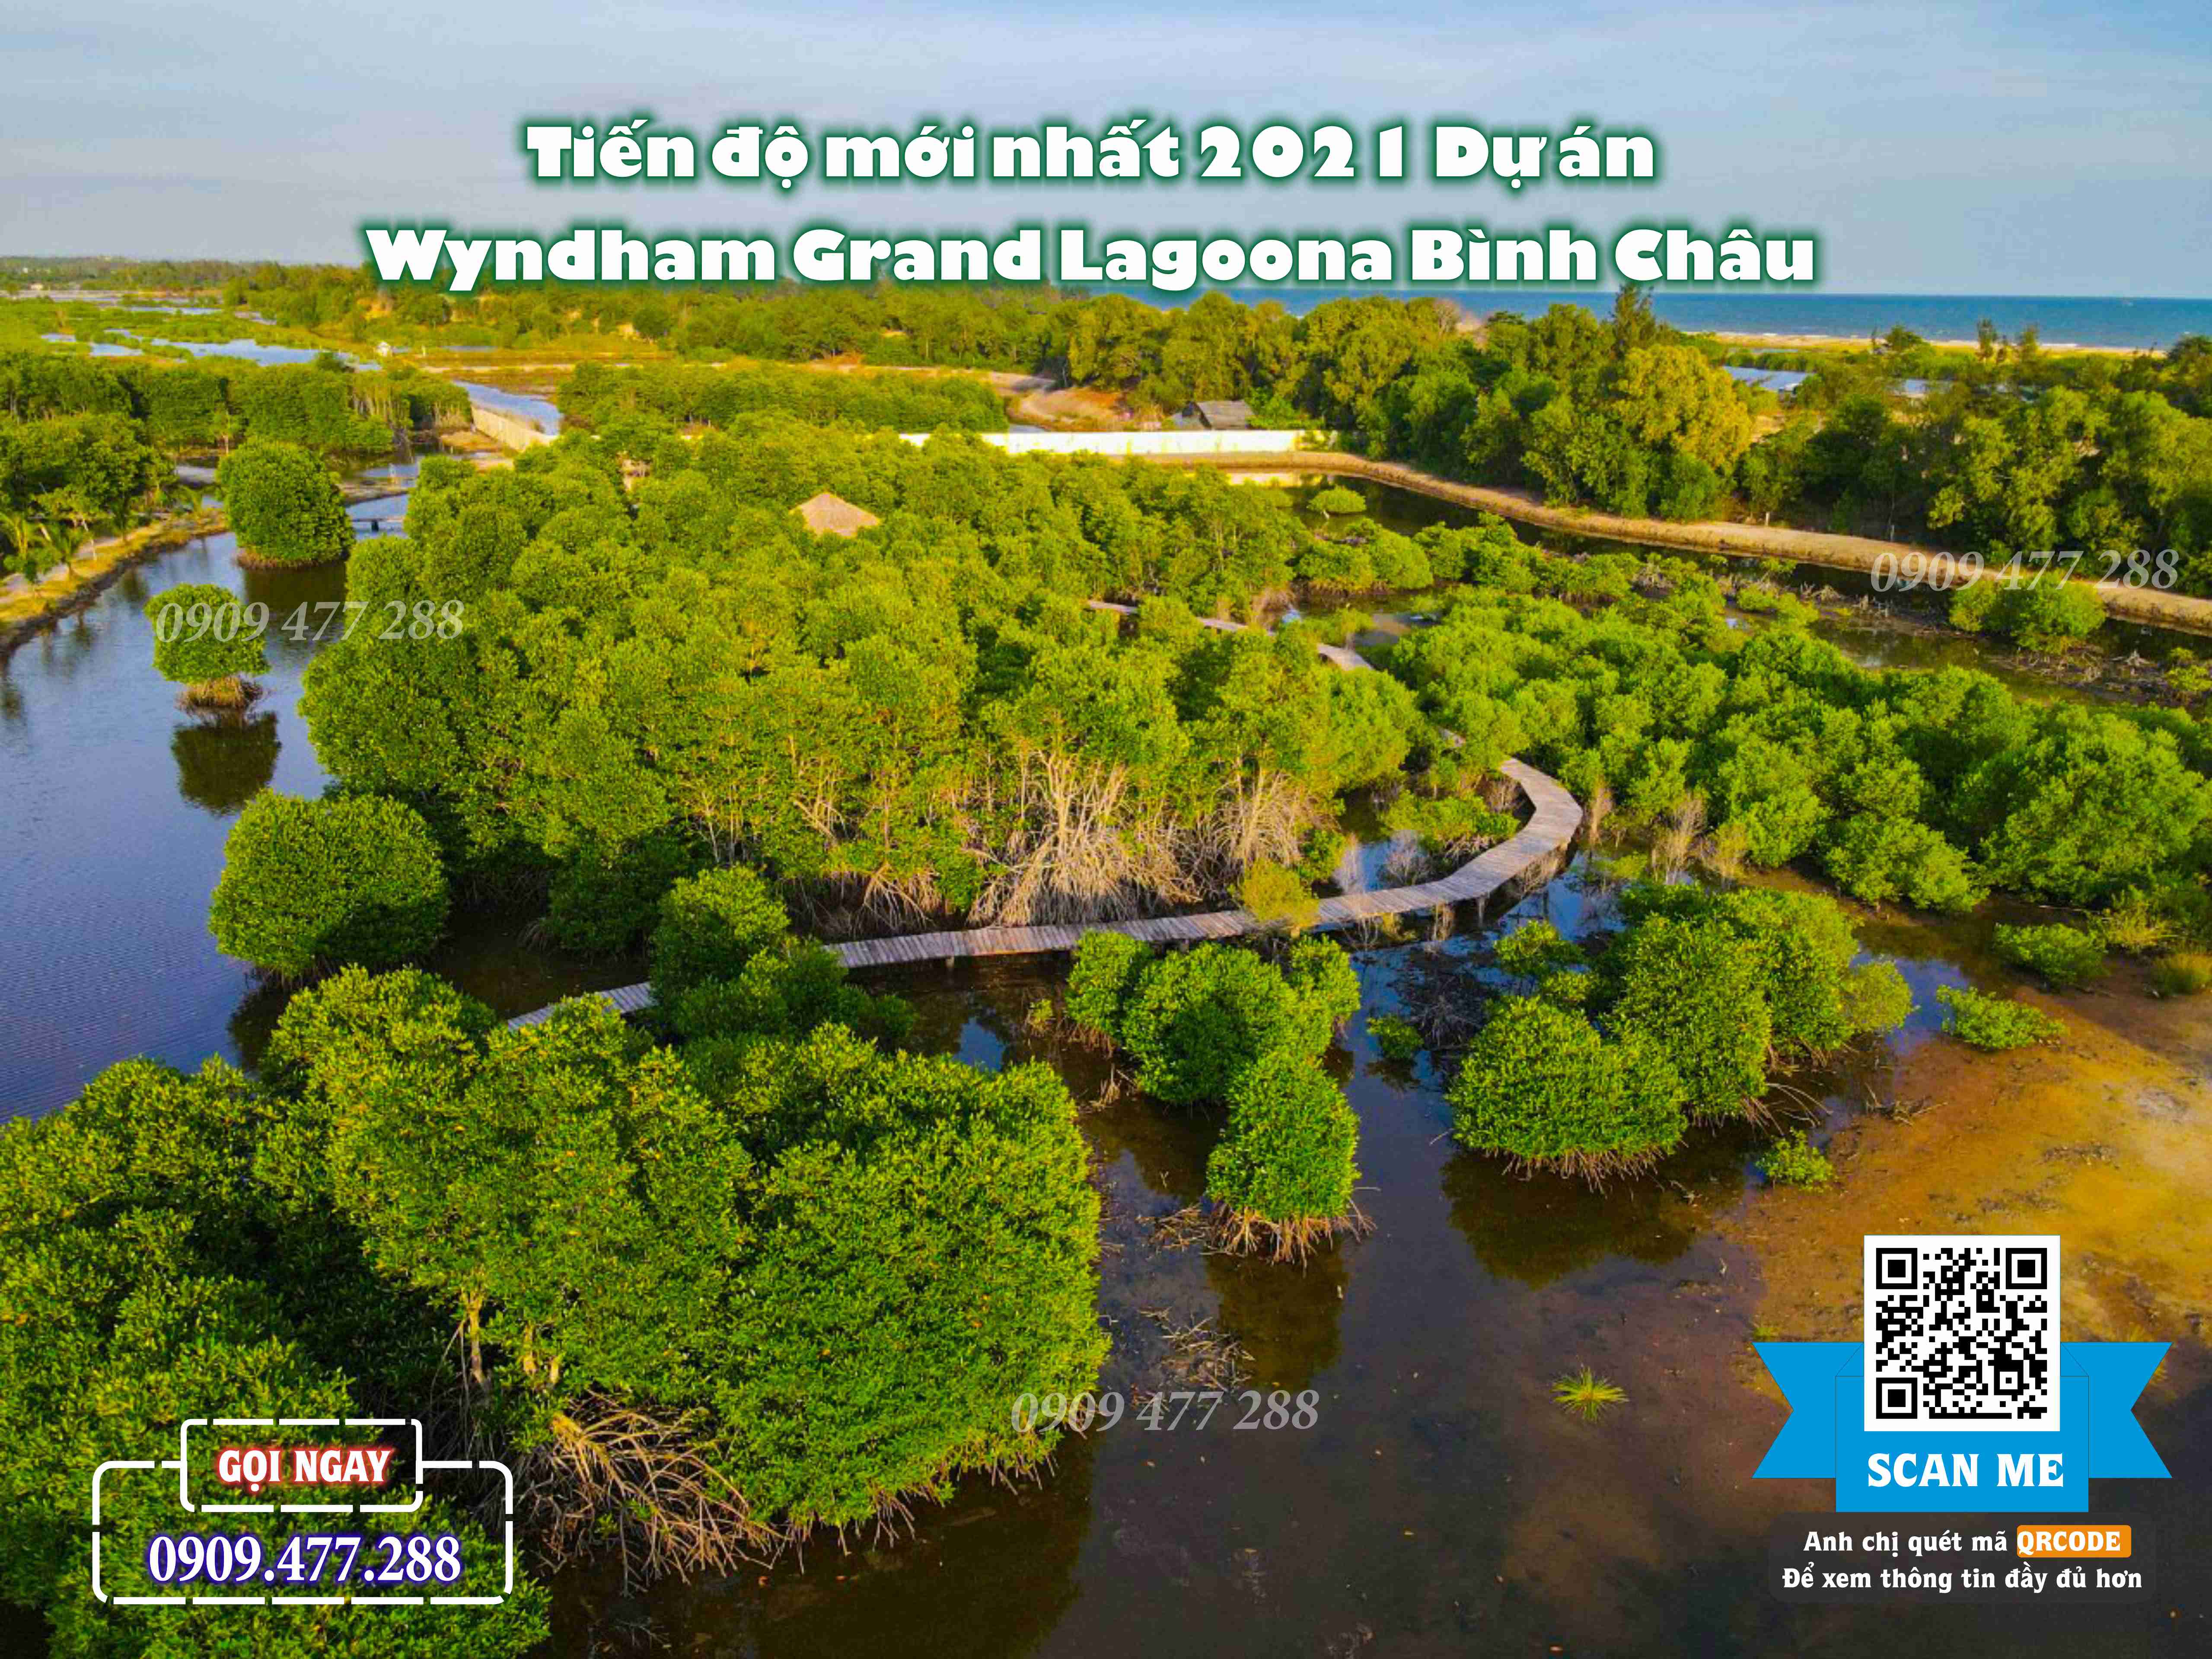 Wyndham Grand Lagoona Bình Châu (21)